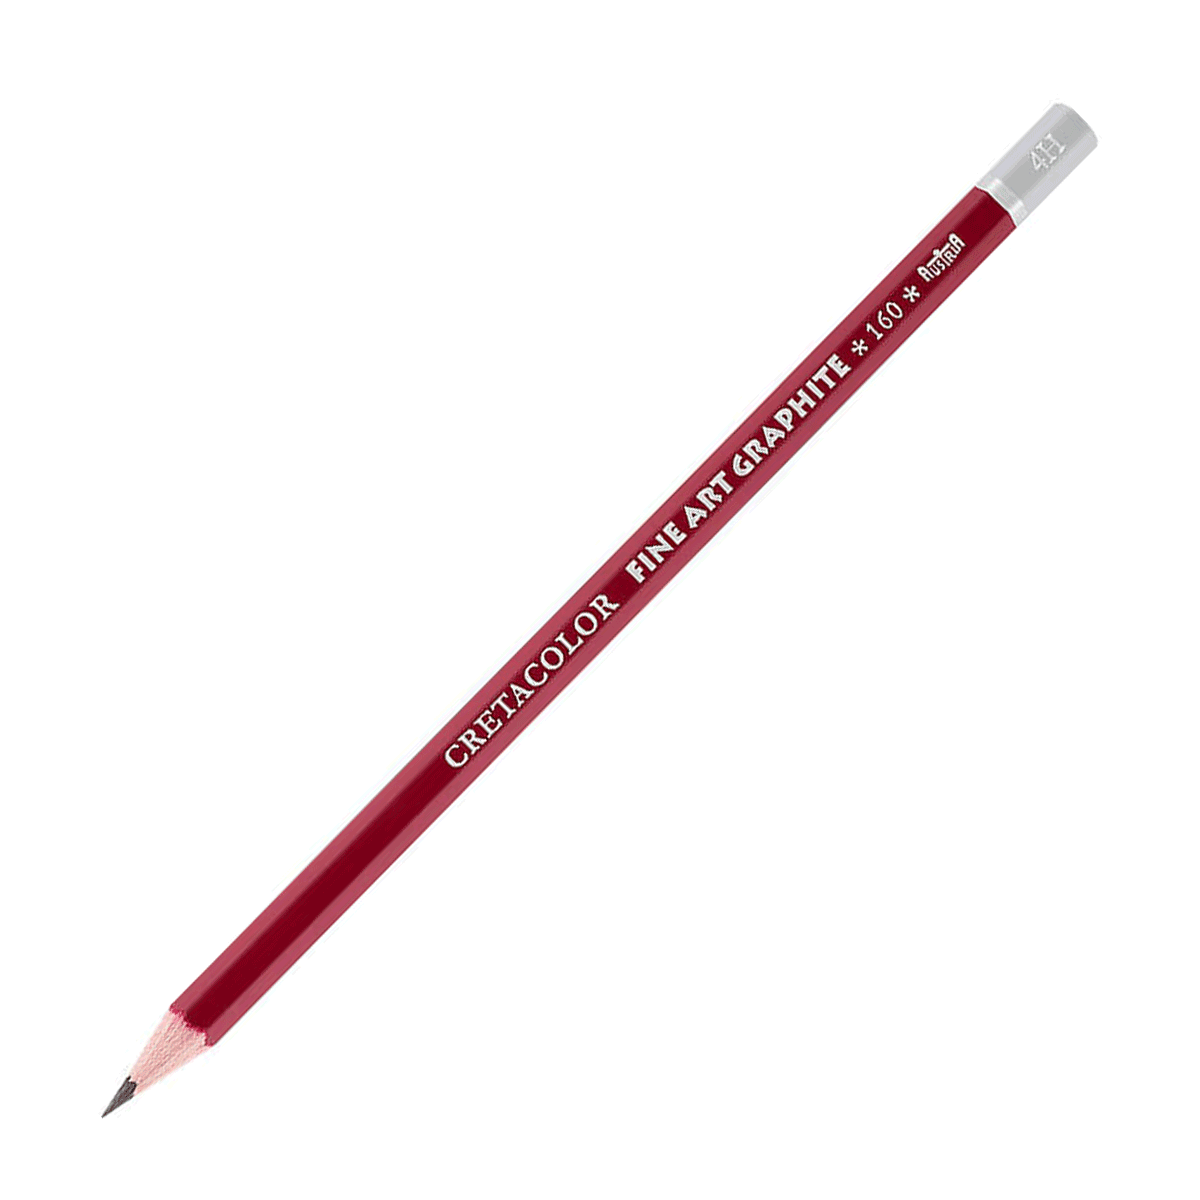 Cretacolor Fine Art Red Graphite Pencil - 4H